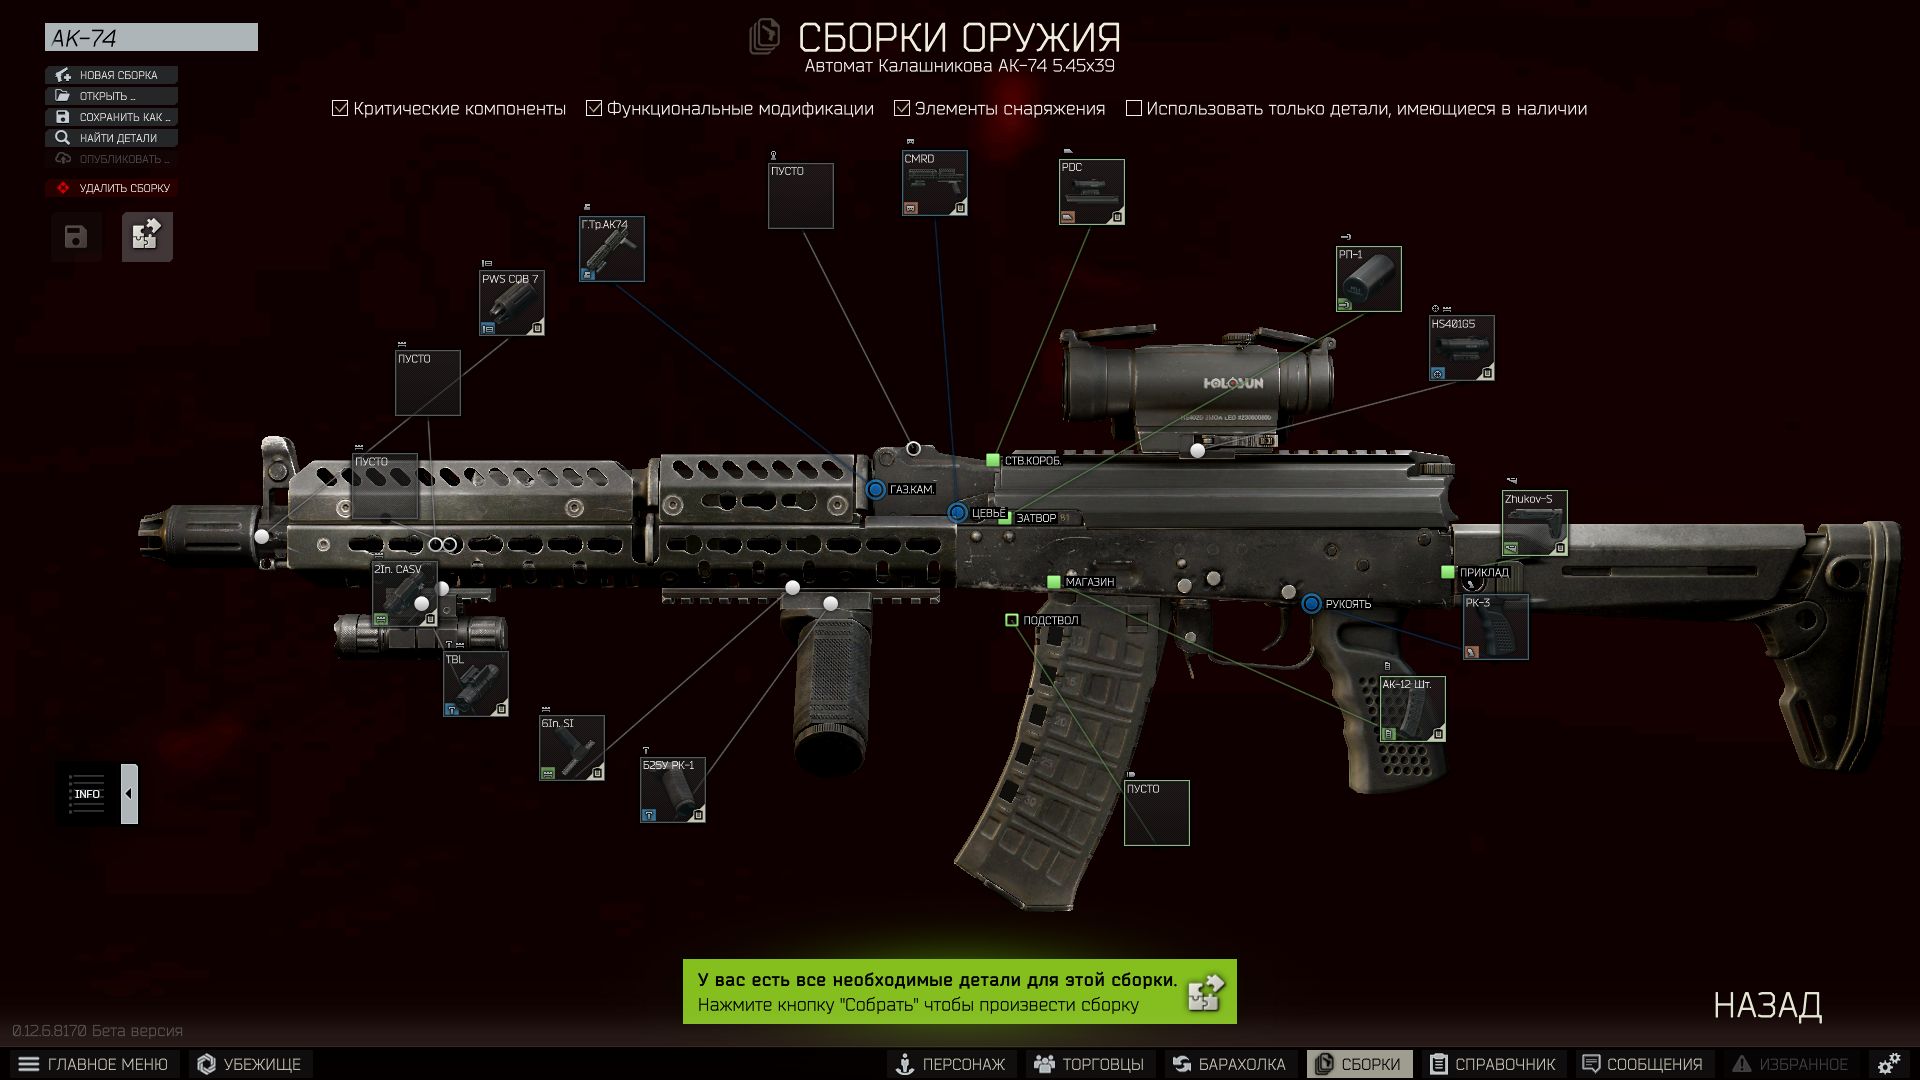 Вот так выглядит меню доступных опций.
Скриншот: Cybersport.ru